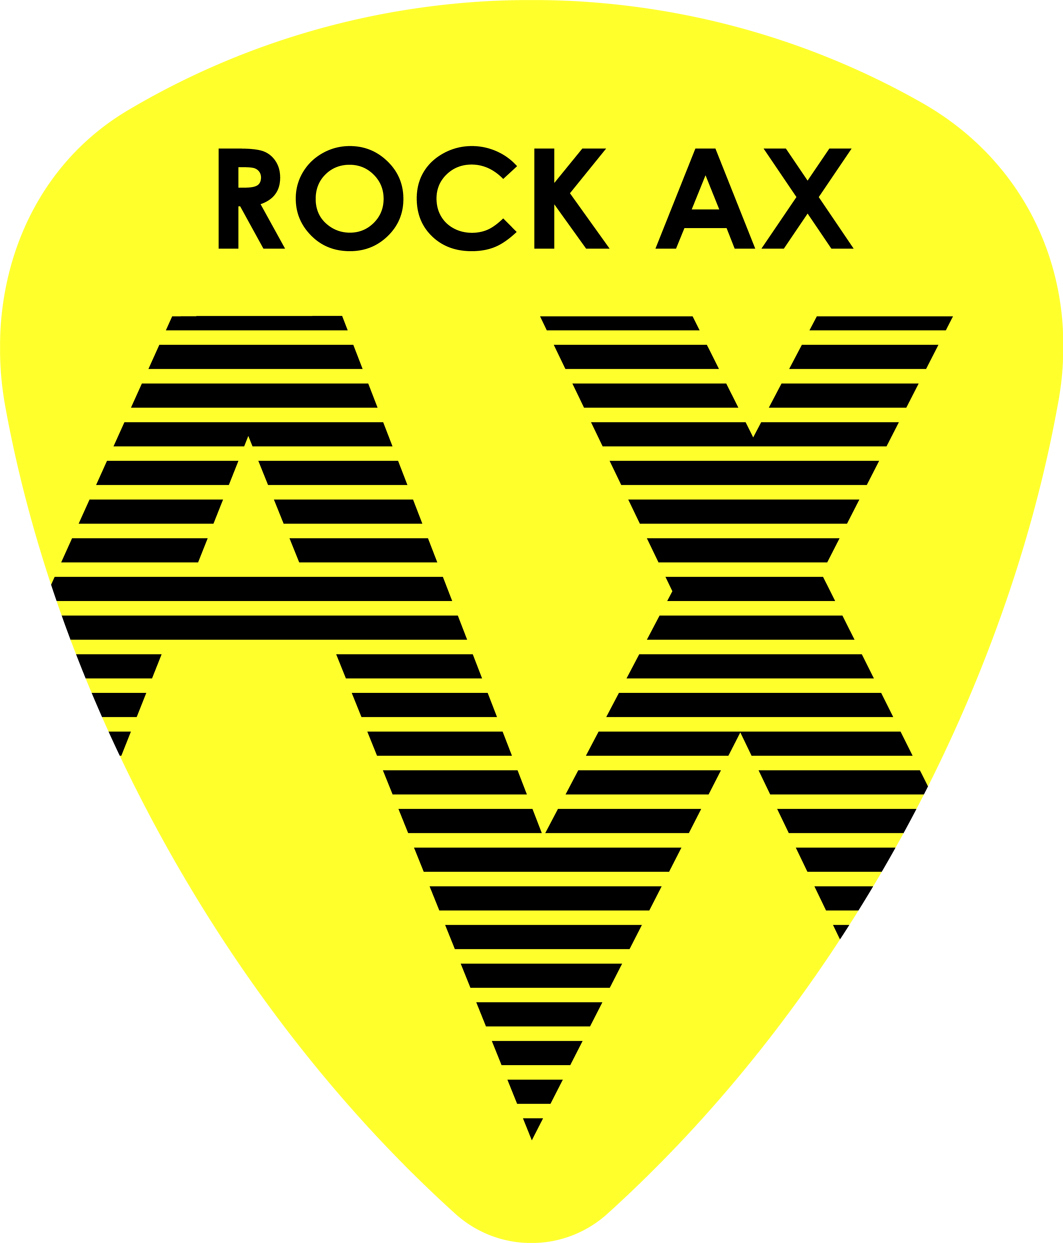 『ROCK AX Vol.4』